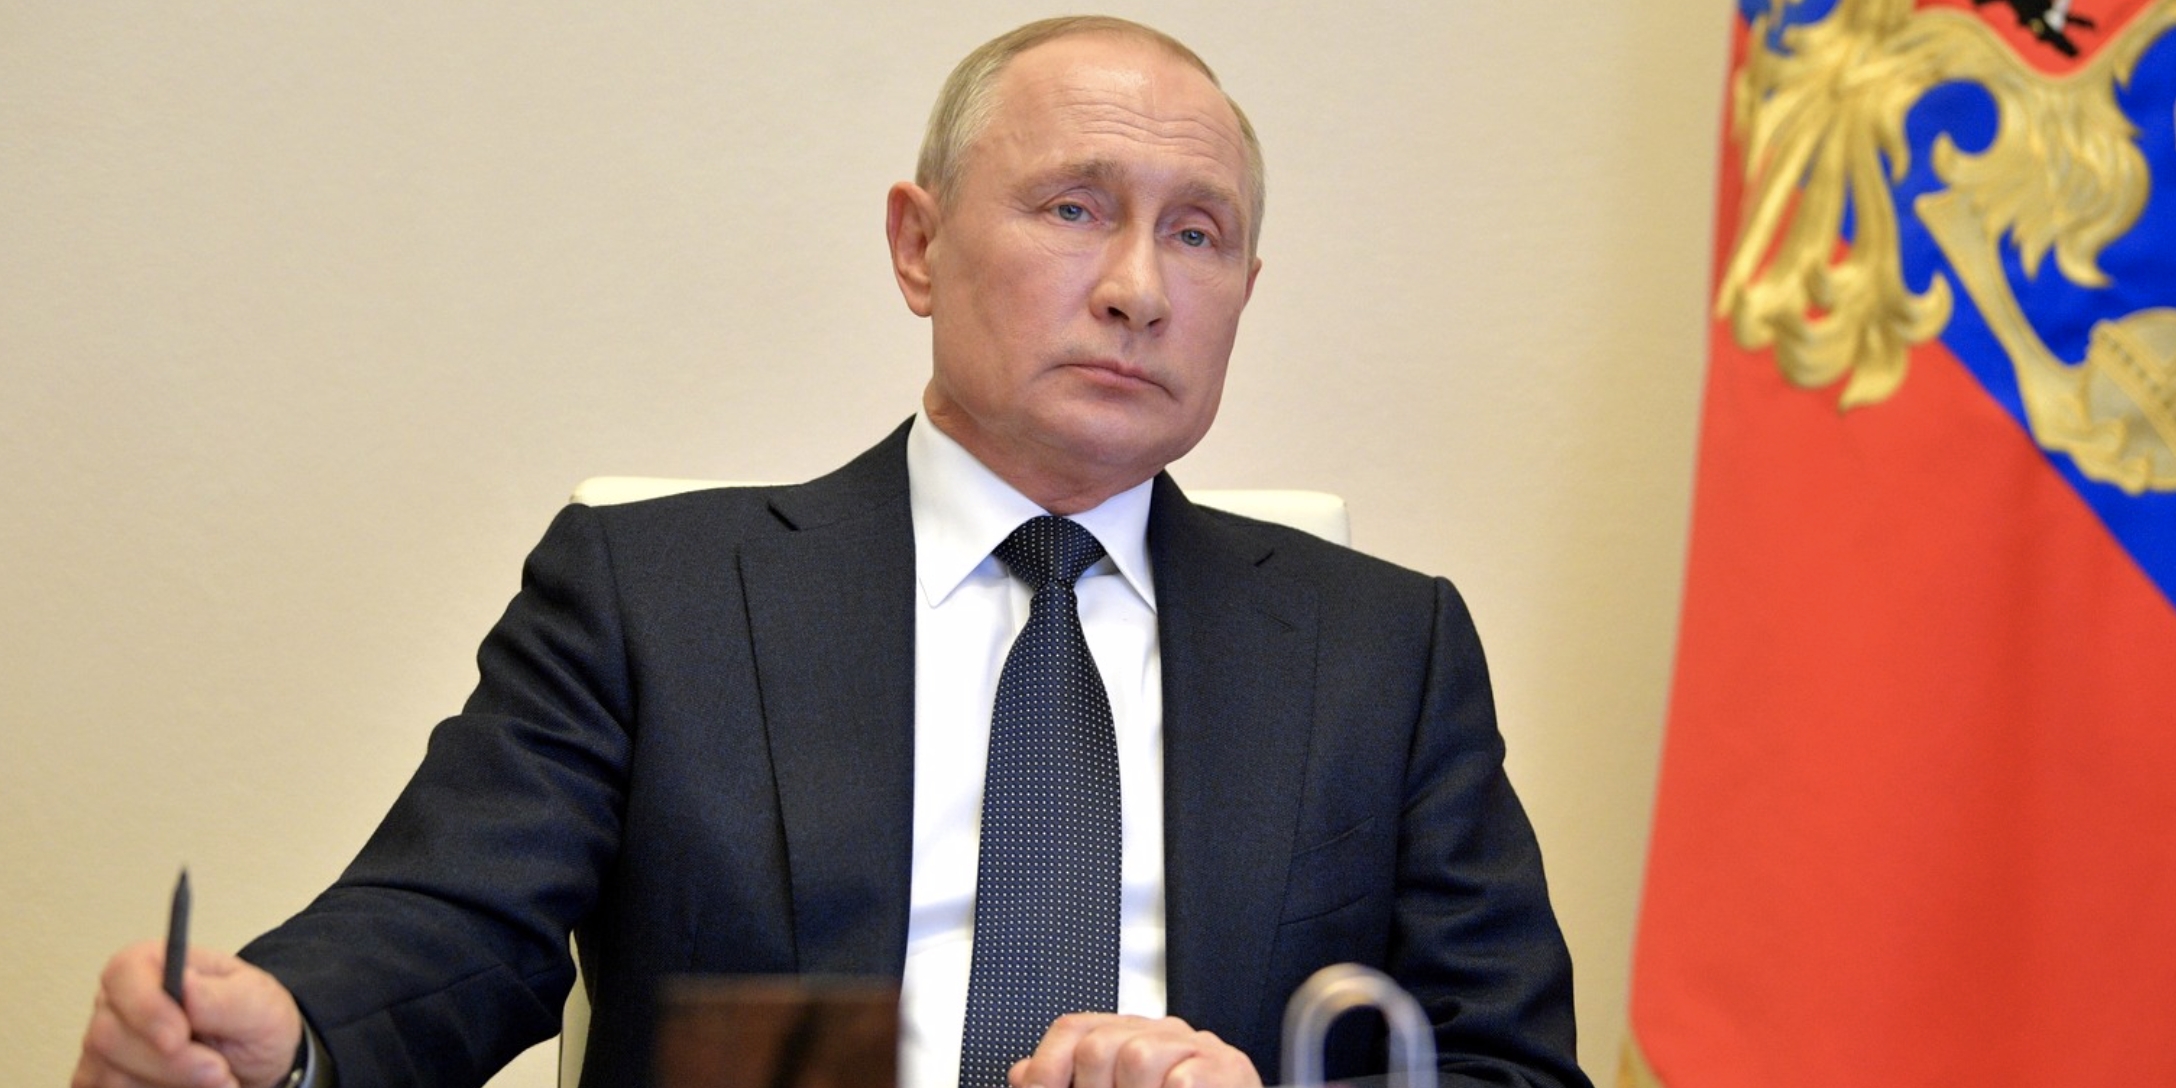 Вирус проигрывает, но война не окончена: основные тезисы выступления Путина